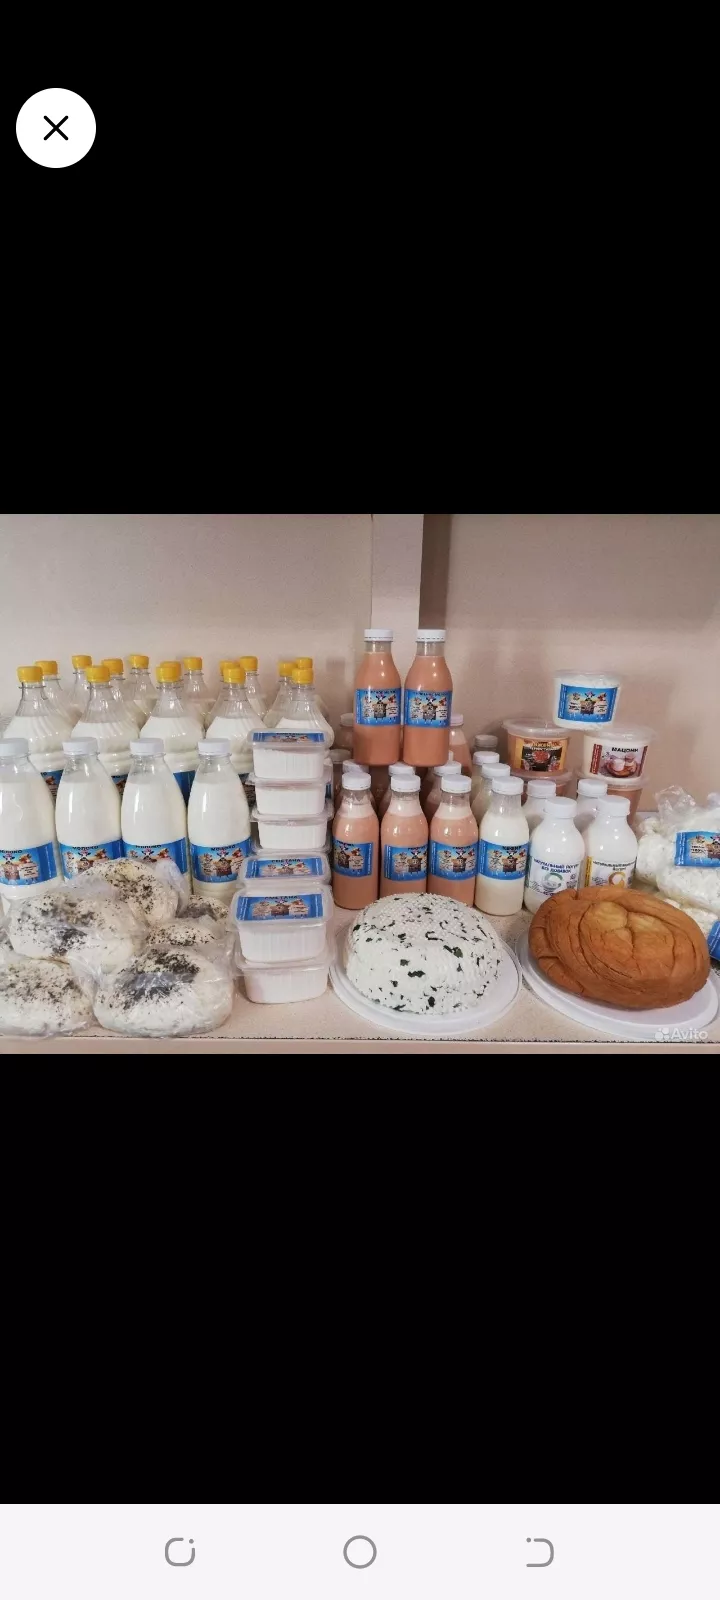  молоко и молочные продукты  в Самаре и Самарской области